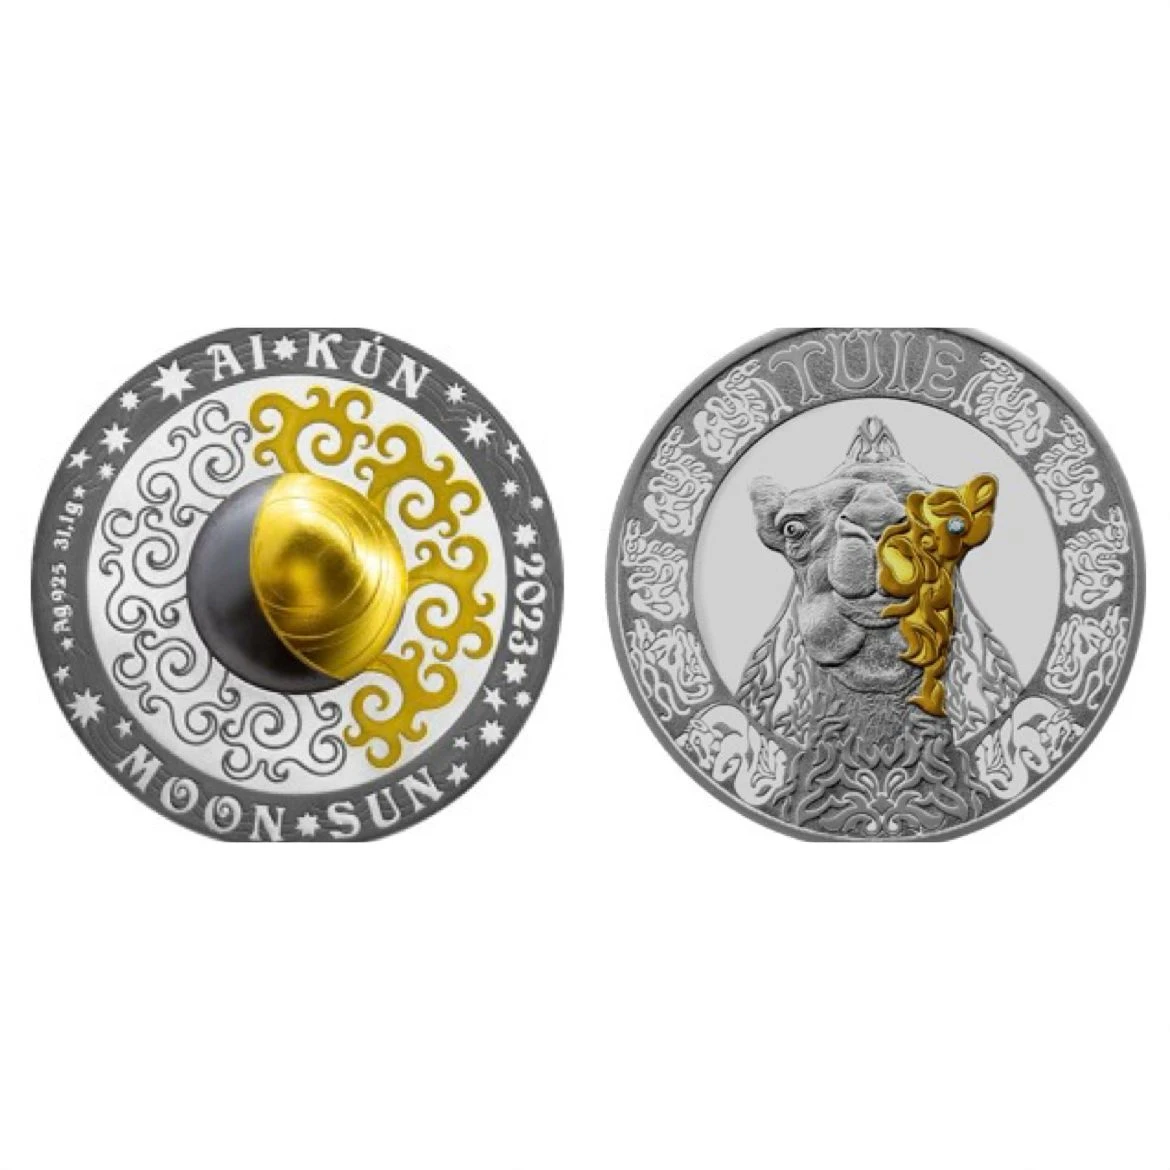 AI•KÚN және TÚIE: Ұлттық банк жаңа коллекциялық монеталарды таныстырды